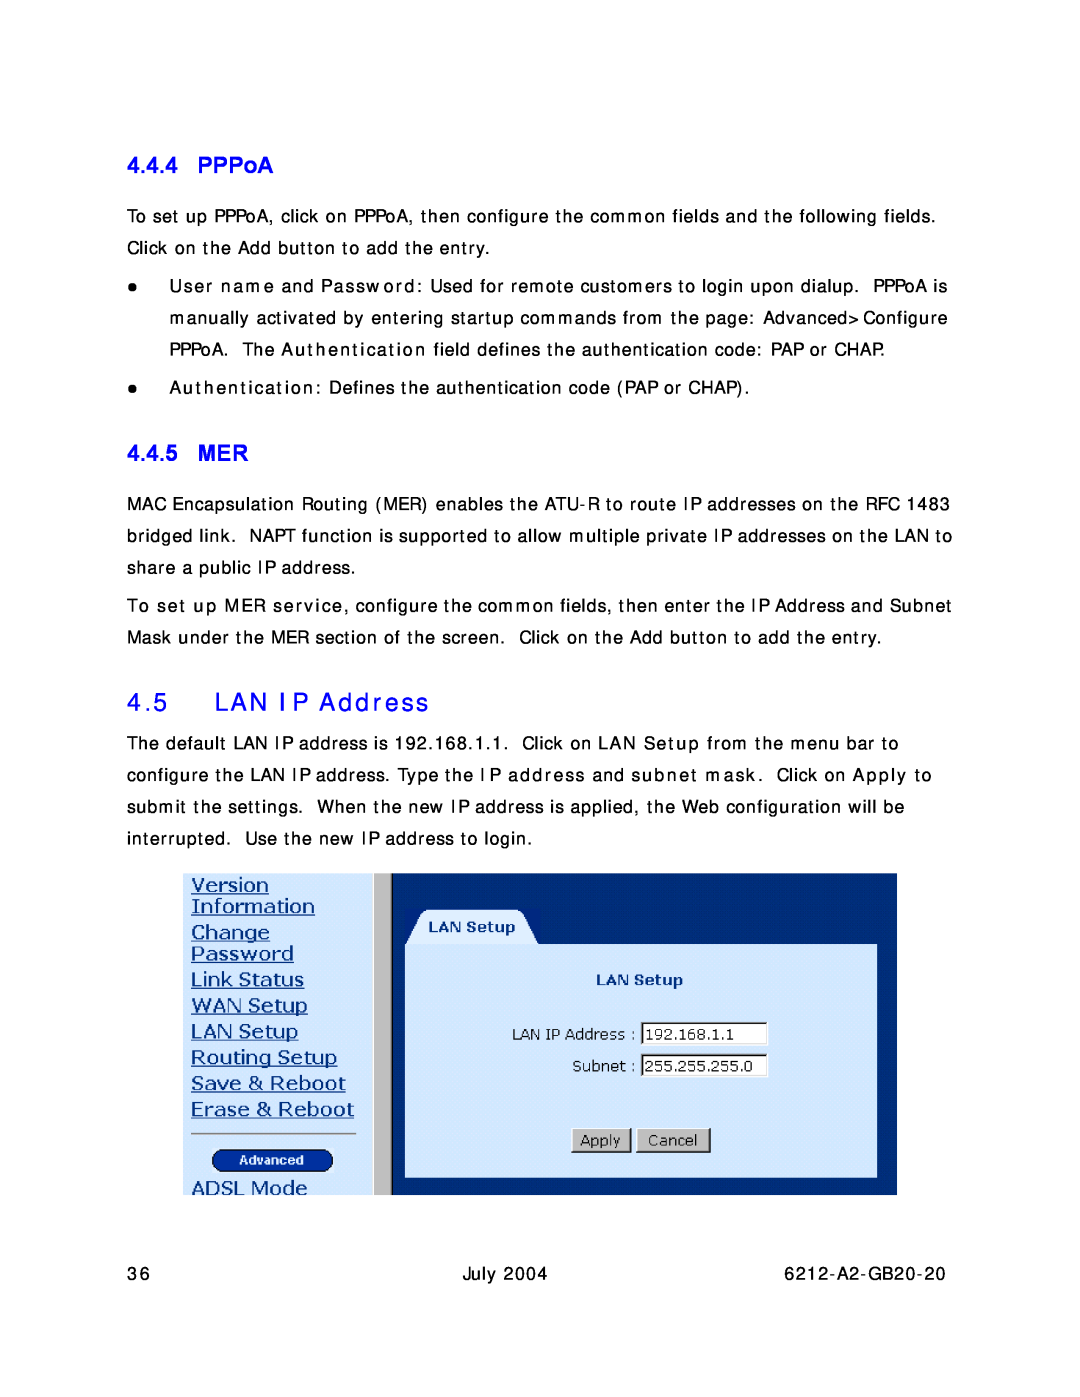 Paradyne 6212 manual LAN IP Address, PPPoA, 4.4.5 MER 